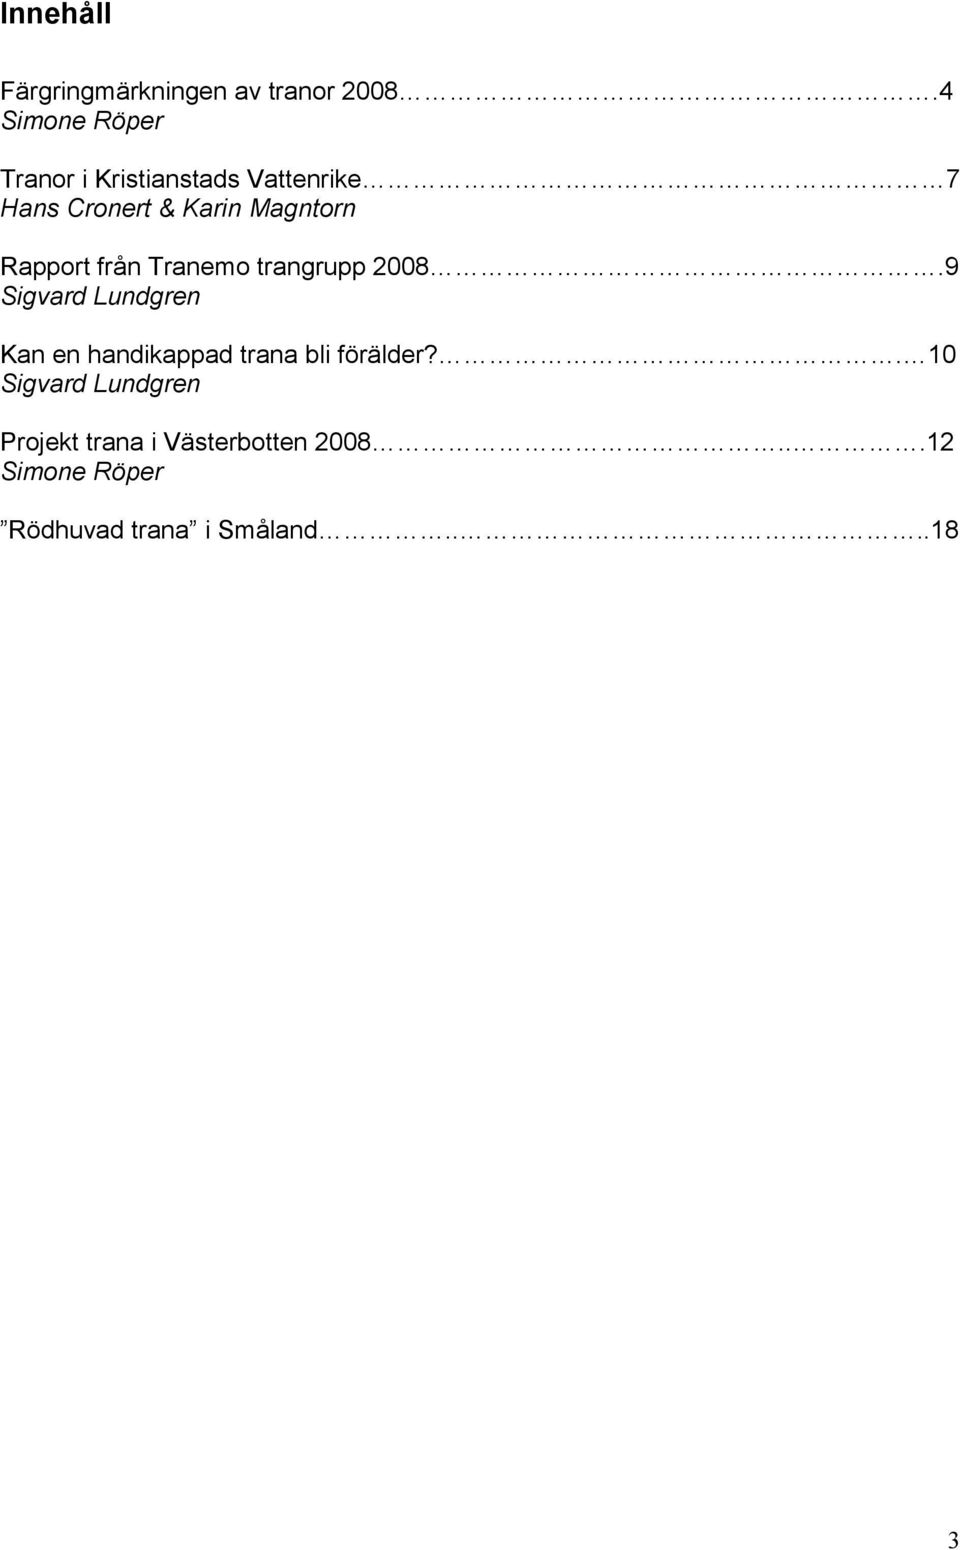 Rapport från Tranemo trangrupp 2008.